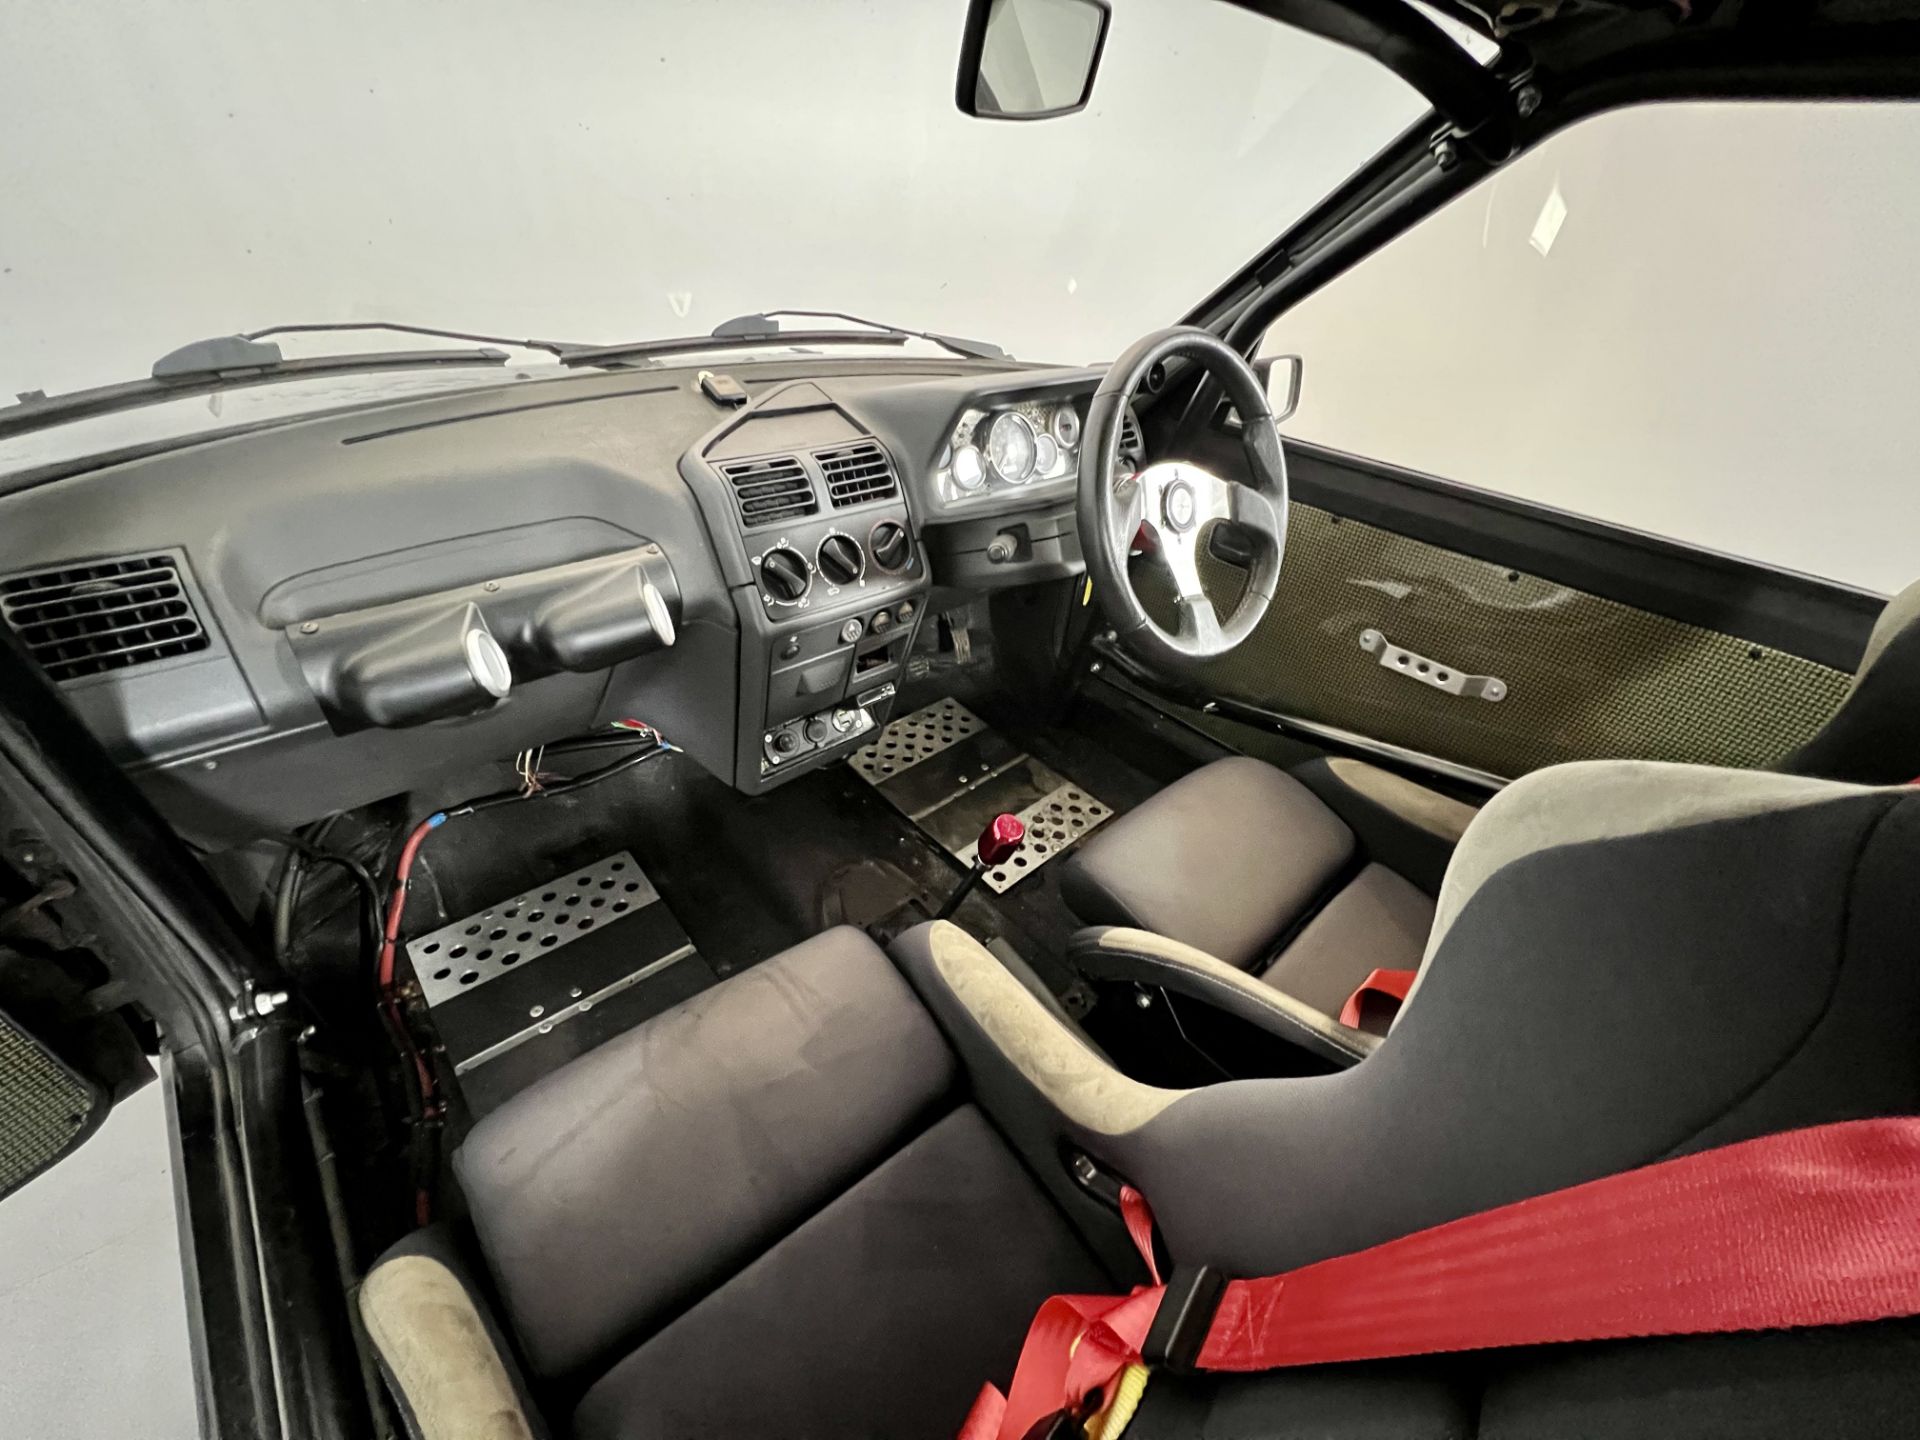 Peugeot 205 GTI Turbo - Image 23 of 26